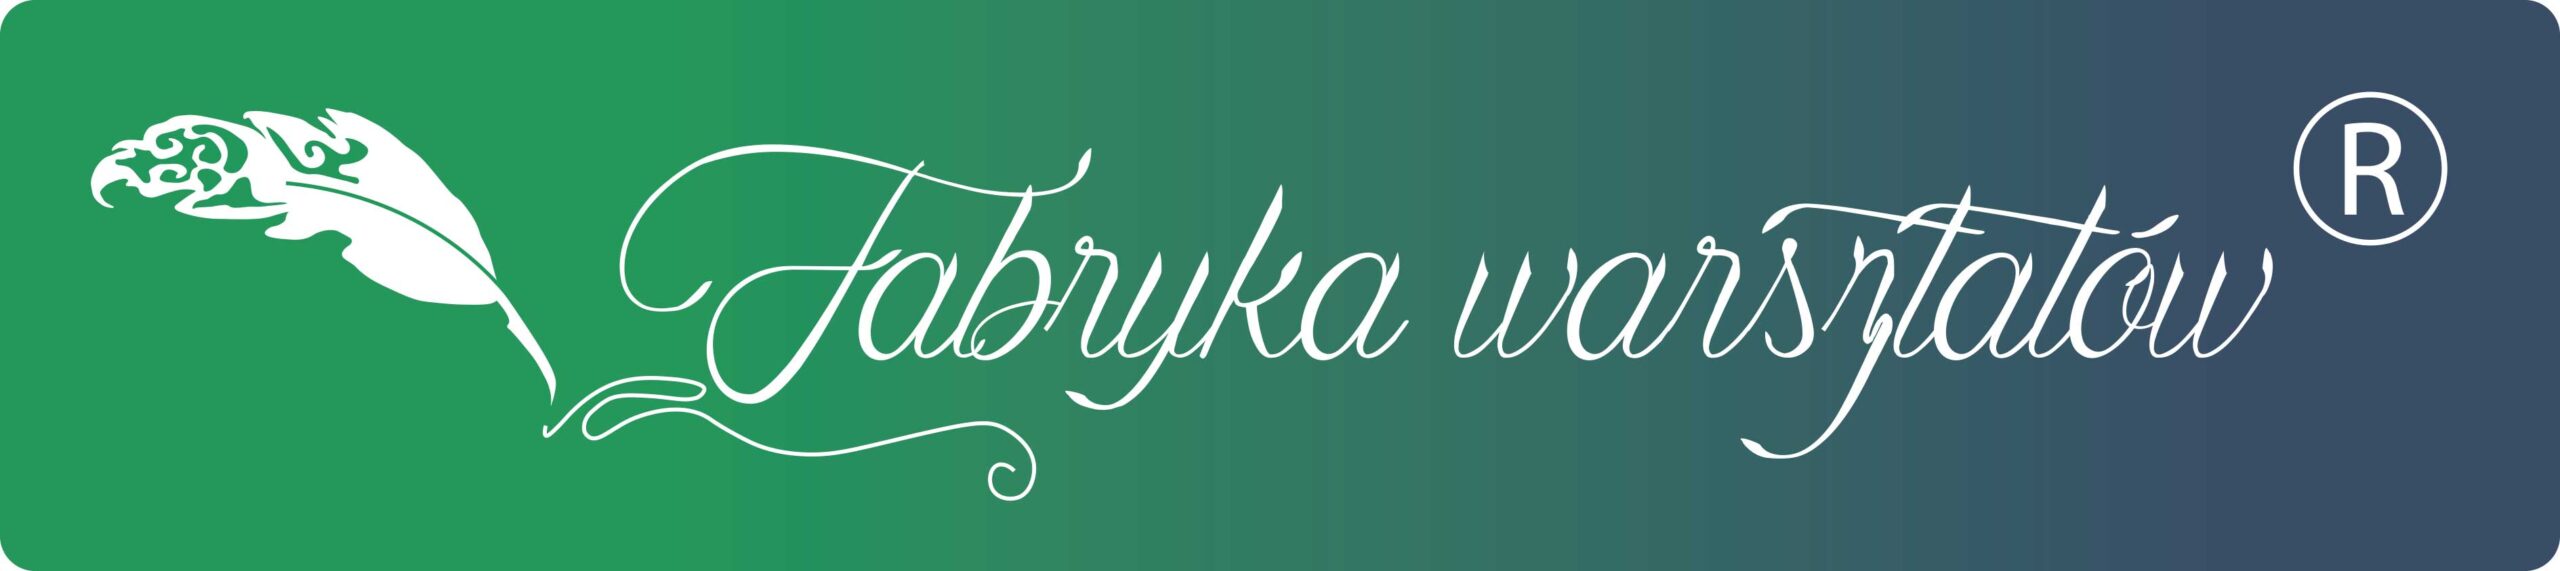 logo-fabryka-warsztatw_new_r